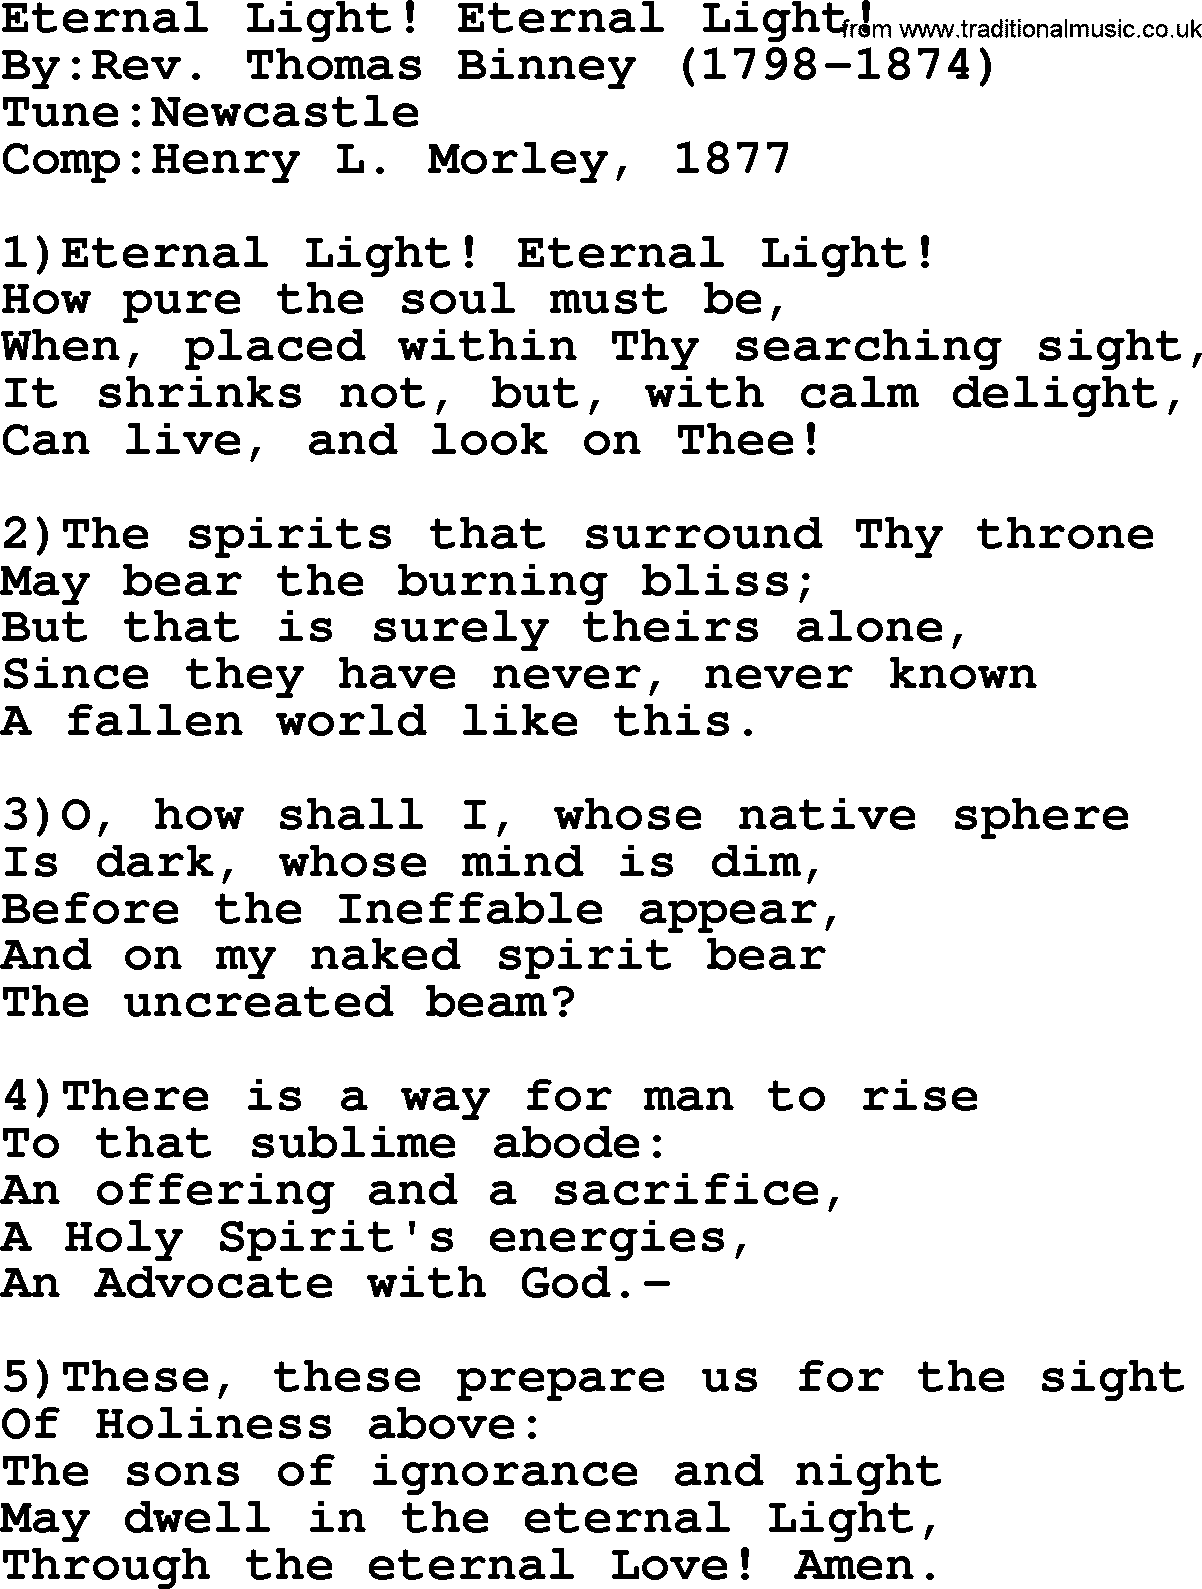 Methodist Hymn: Eternal Light! Eternal Light!, lyrics